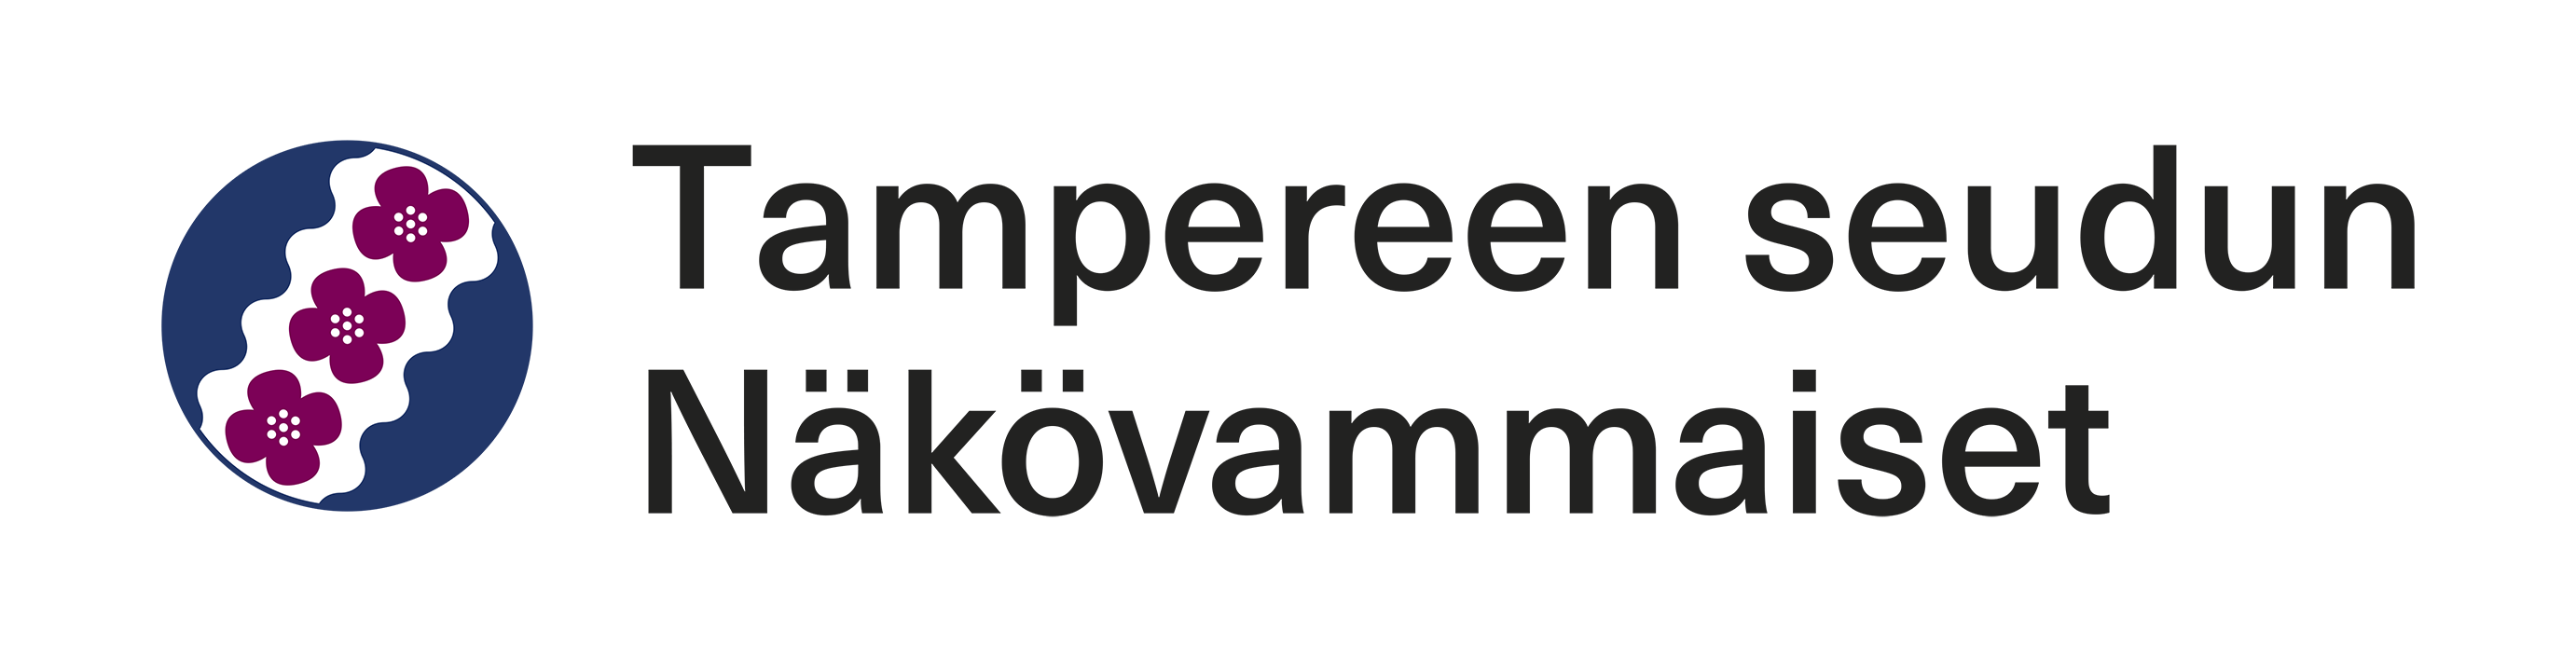 The logo of Tampereen seudun Näkövammaiset.